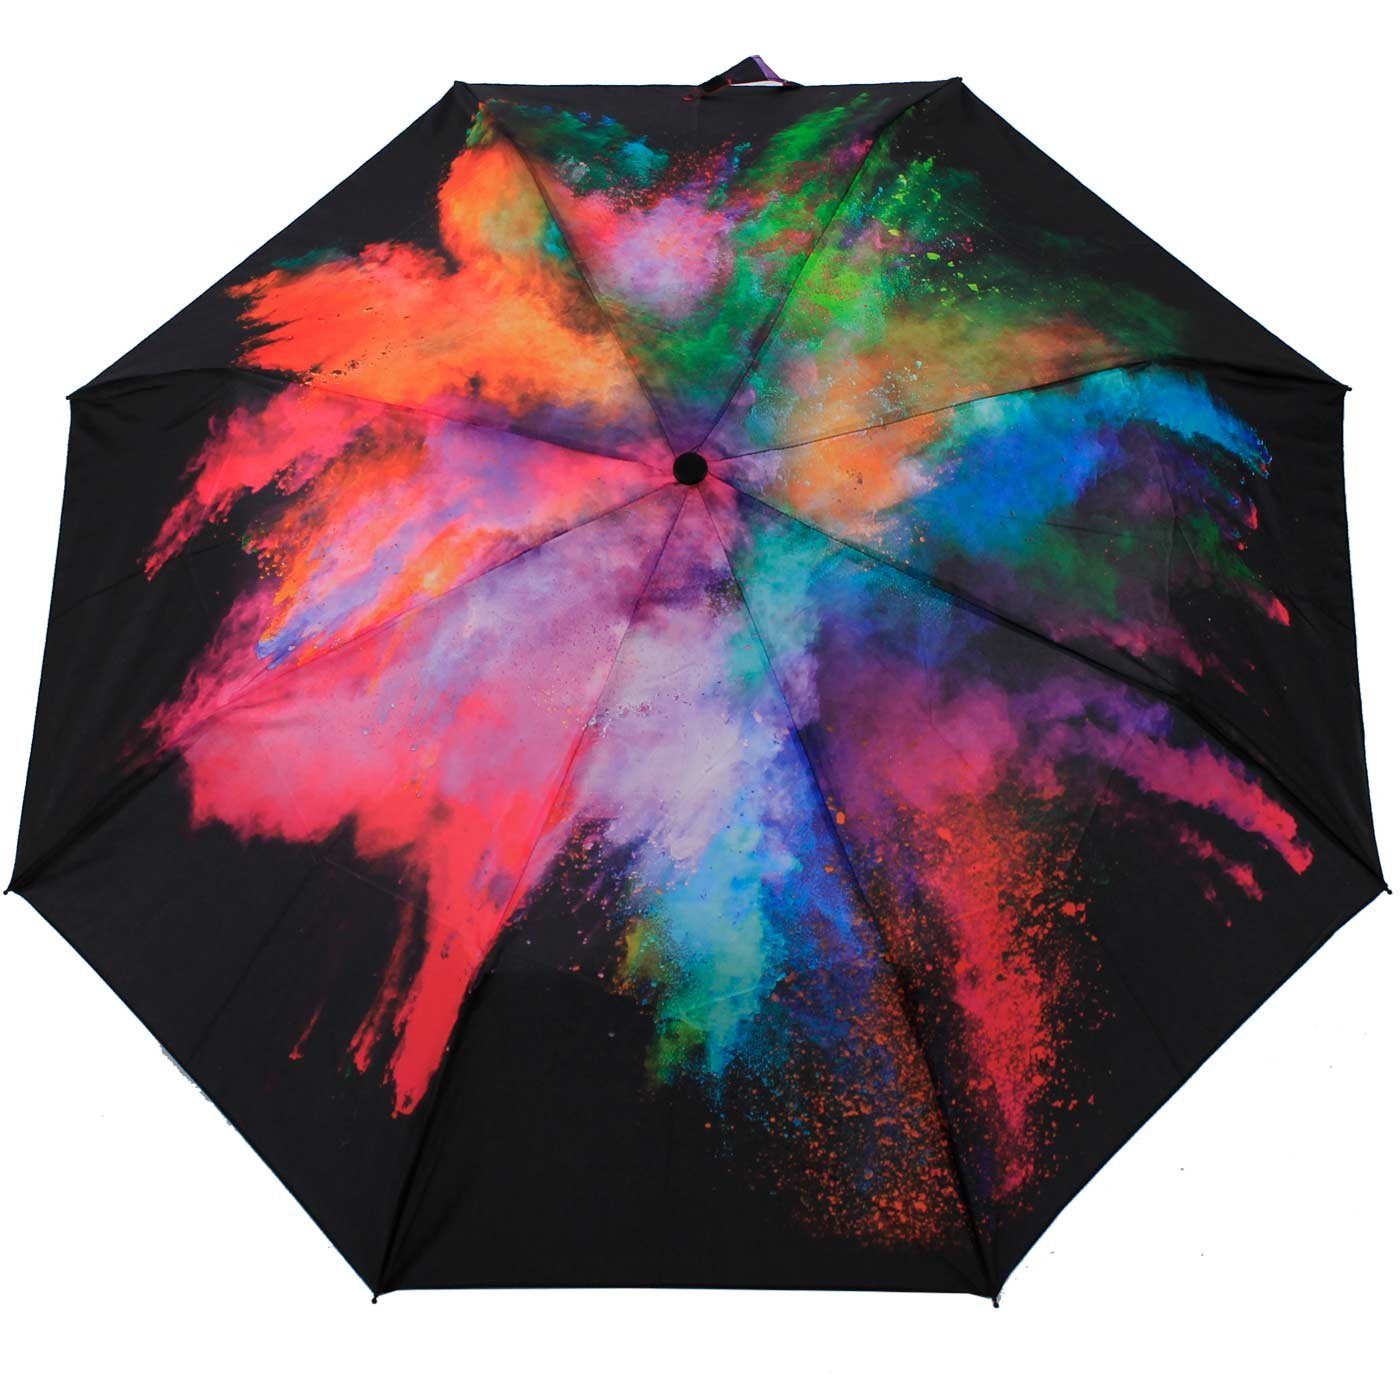 HAPPY RAIN Langregenschirm eindrucksvolle Farbexplosion eine Damen-Regenschirm mit schöner Auf-Automatik